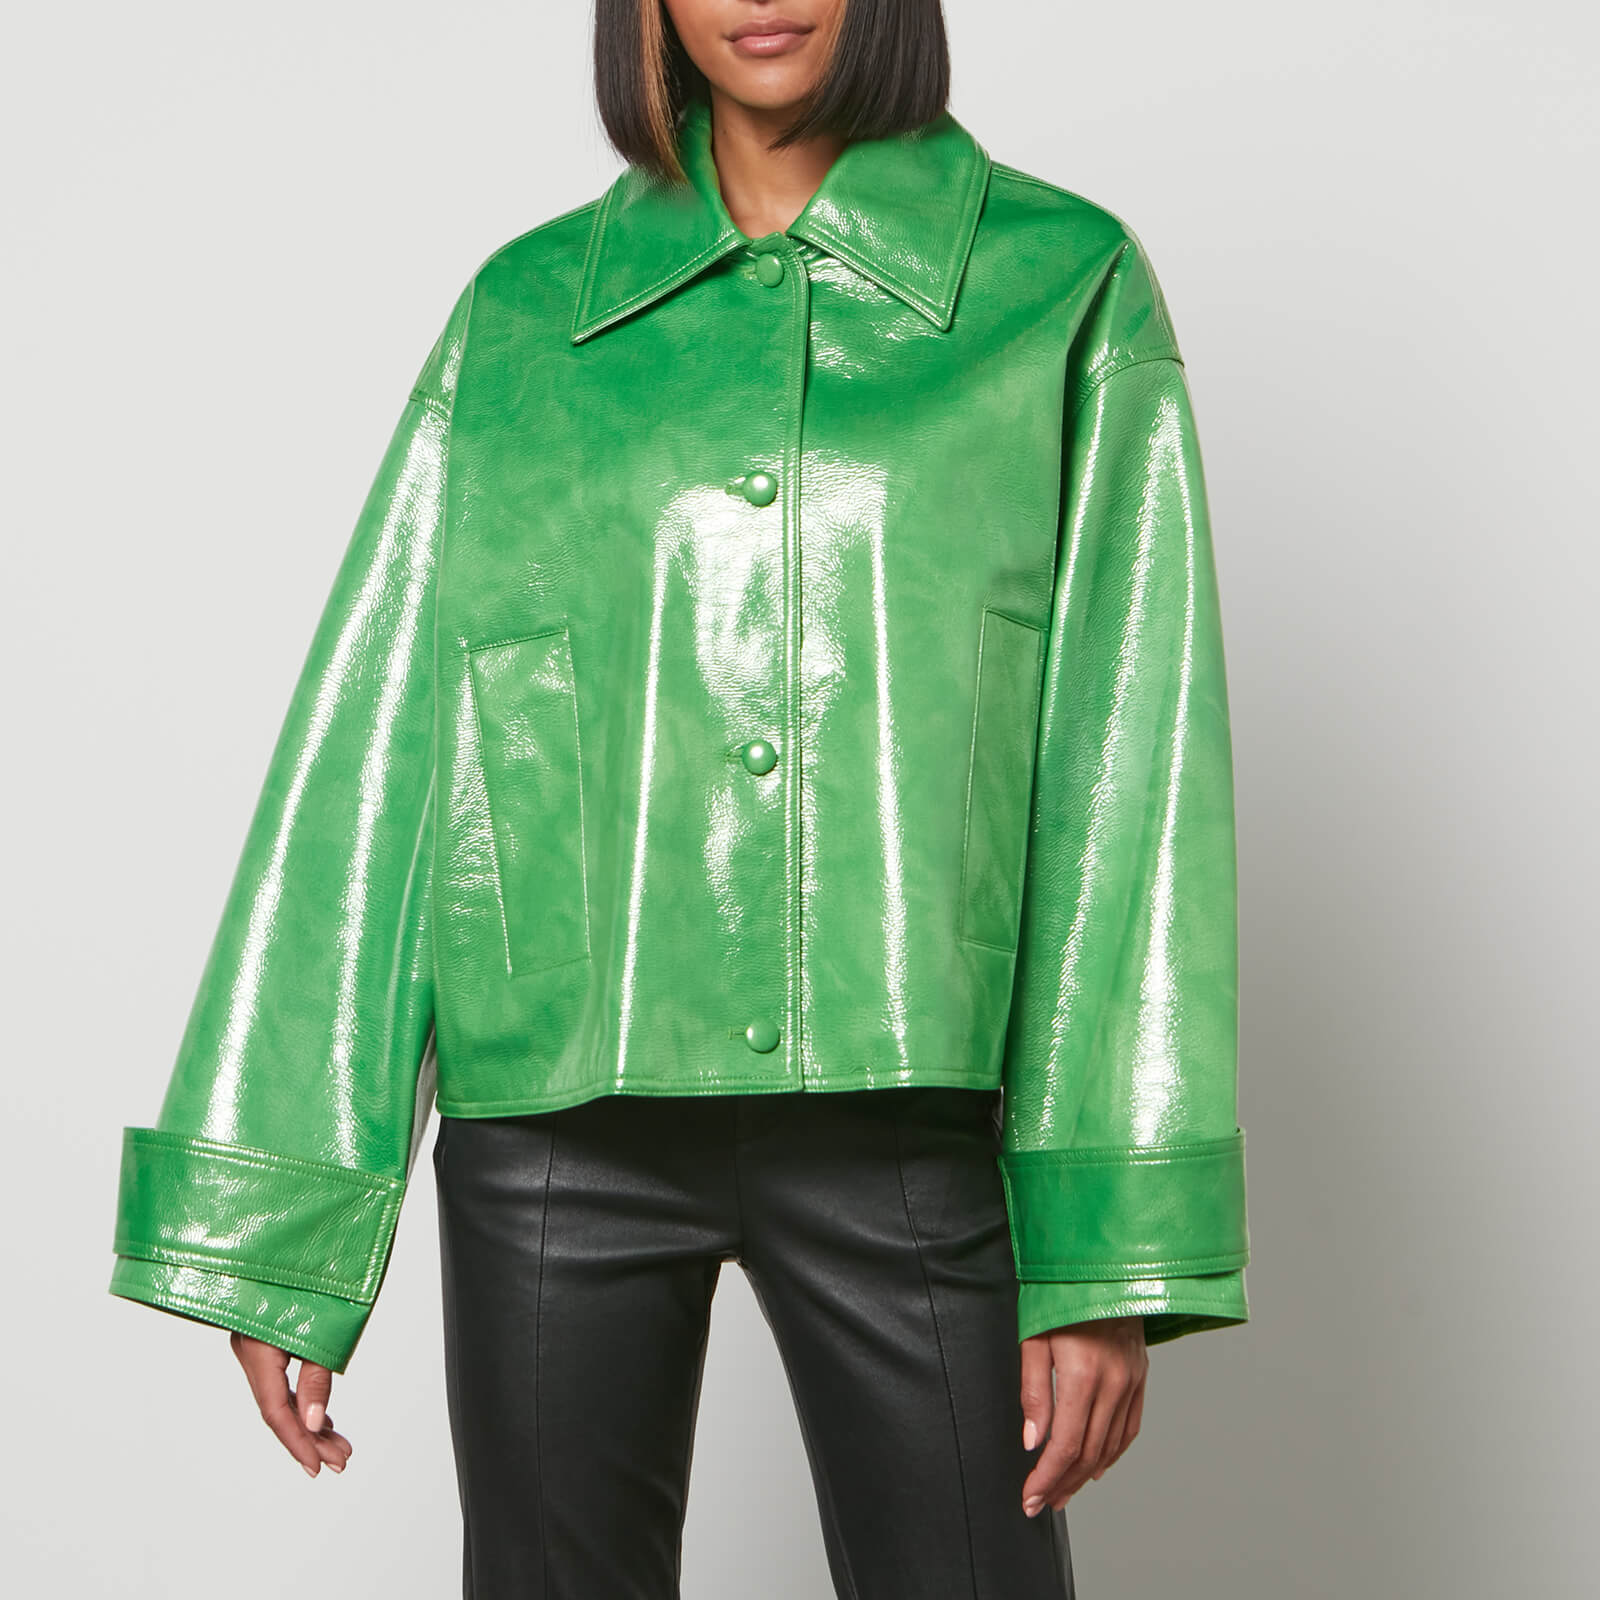 stand studio women's charleen jacket - bright green - eu 36/uk 8